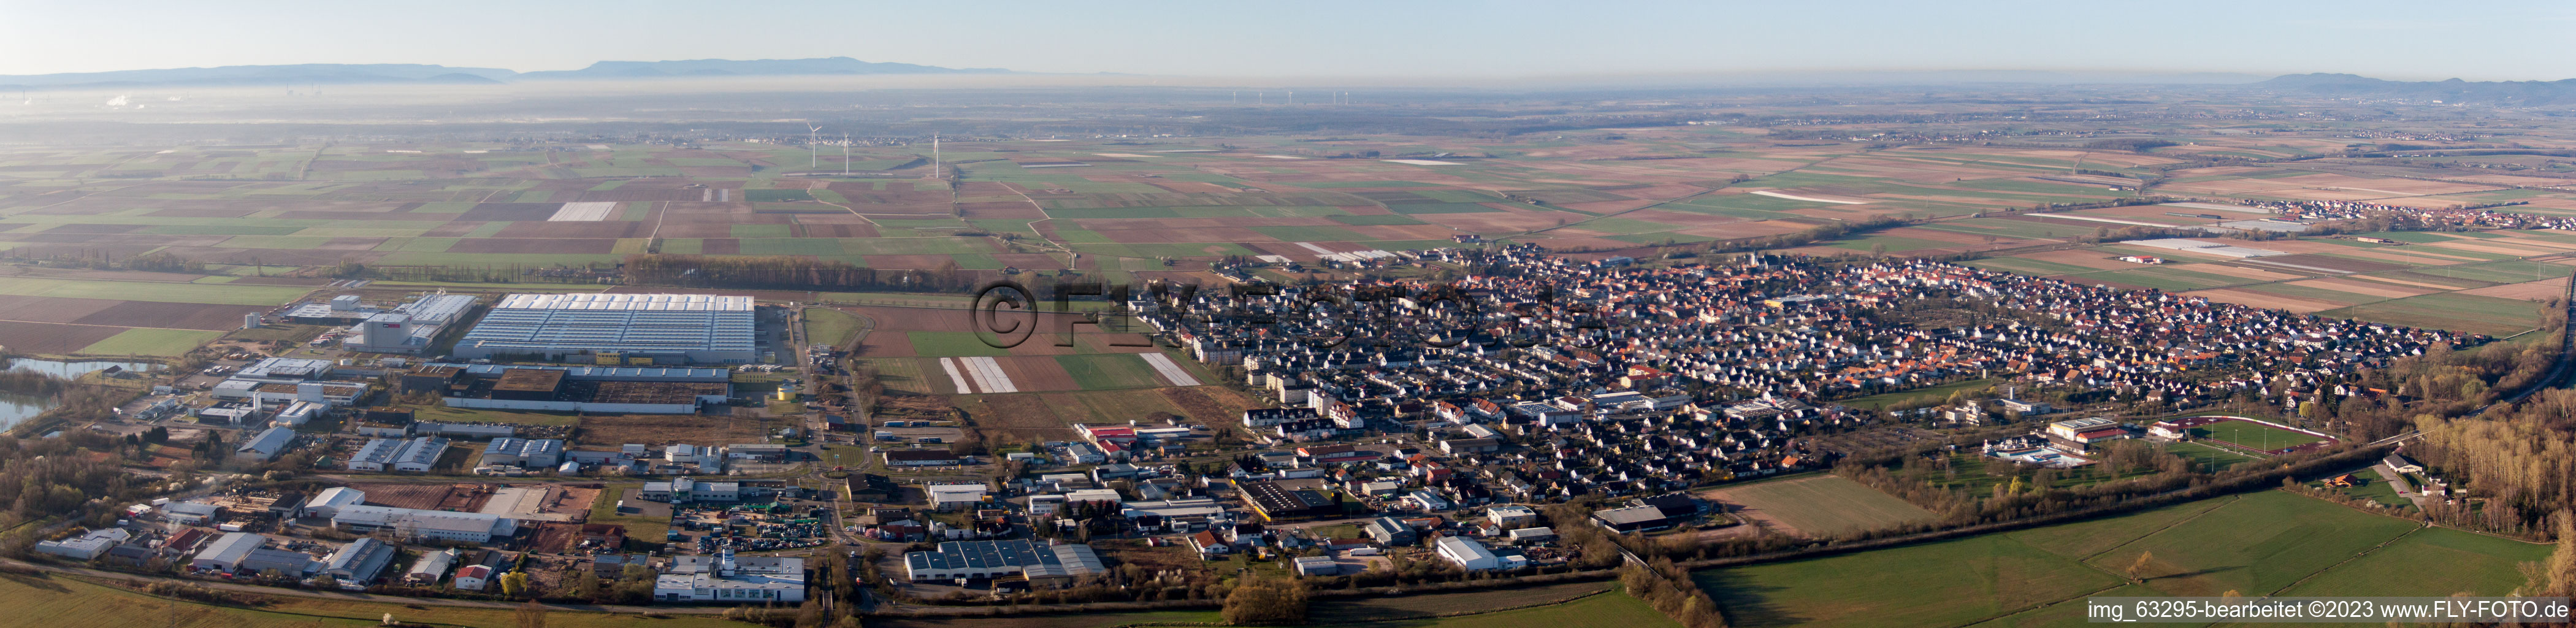 Vue oblique de Panorama à Offenbach an der Queich dans le département Rhénanie-Palatinat, Allemagne